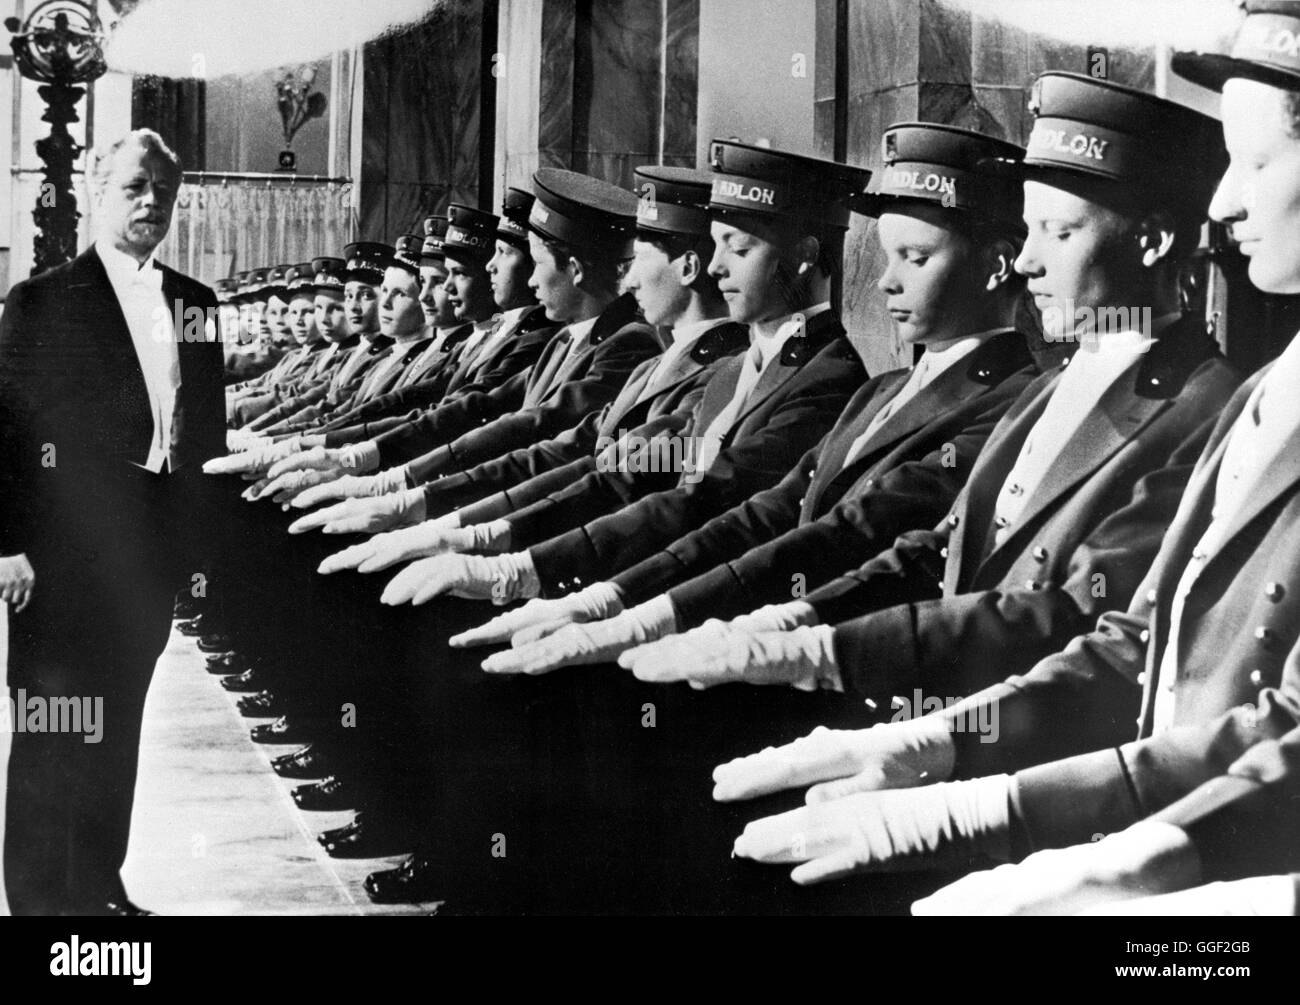 HOTEL ADLON / Deutschland 1955 / Josef von Baaky Lorenz Adlon (WERNER HINZ) inspiziert die Hotelpagen. Filmszene aus 'Hotel Adlon', 1955. Regie: Josef von Baky Stock Photo